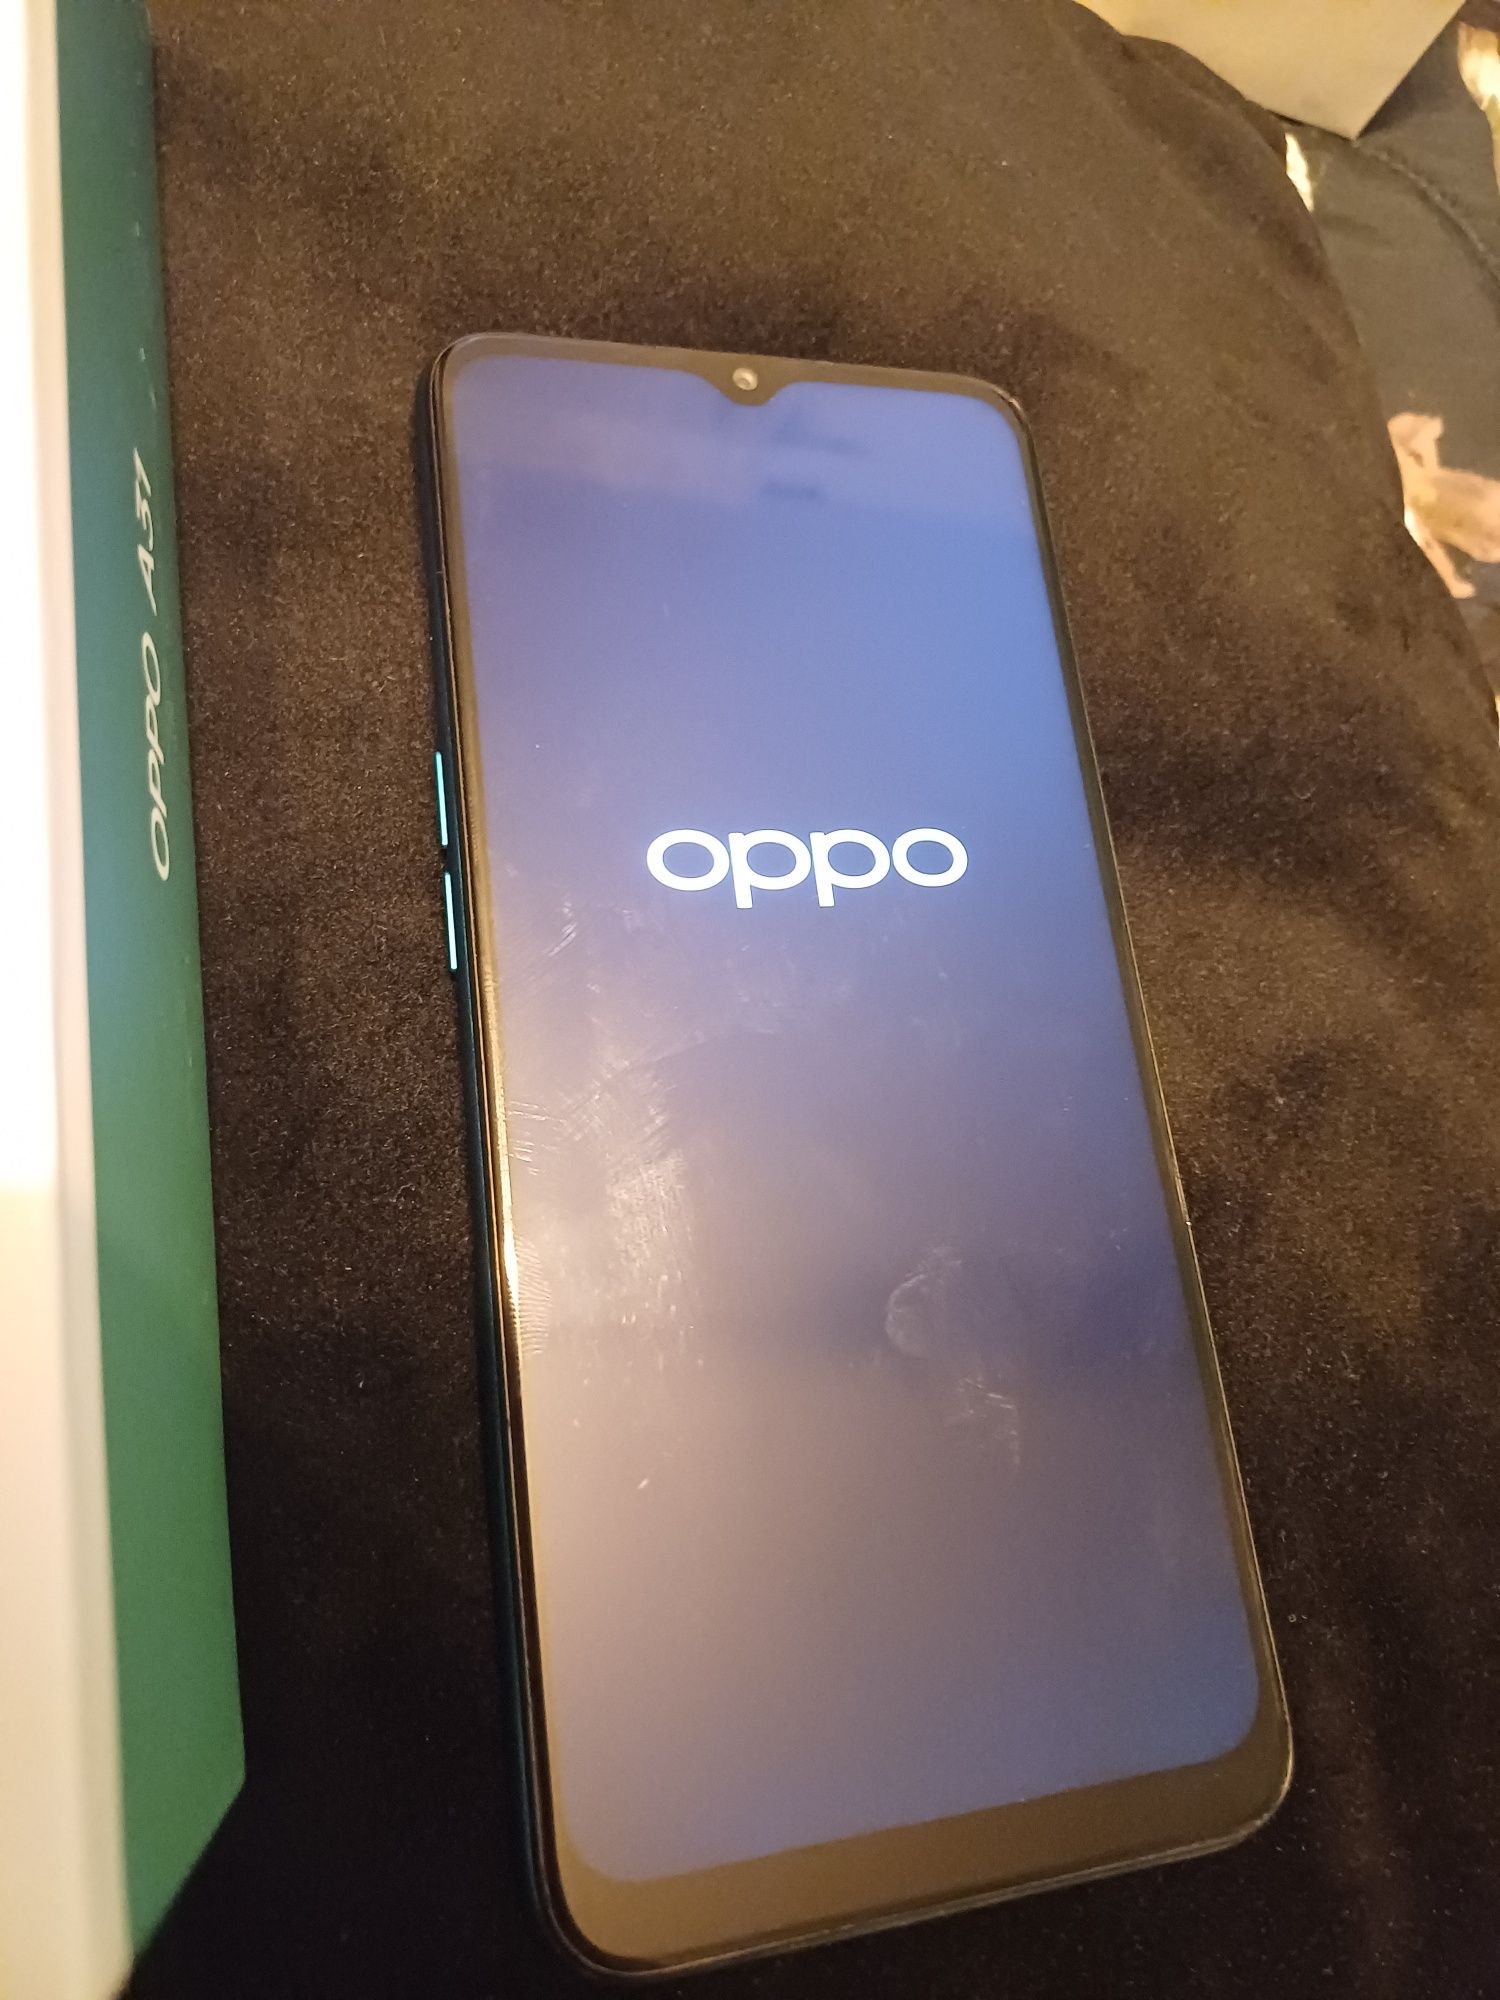 Super smartphone Oppo A31